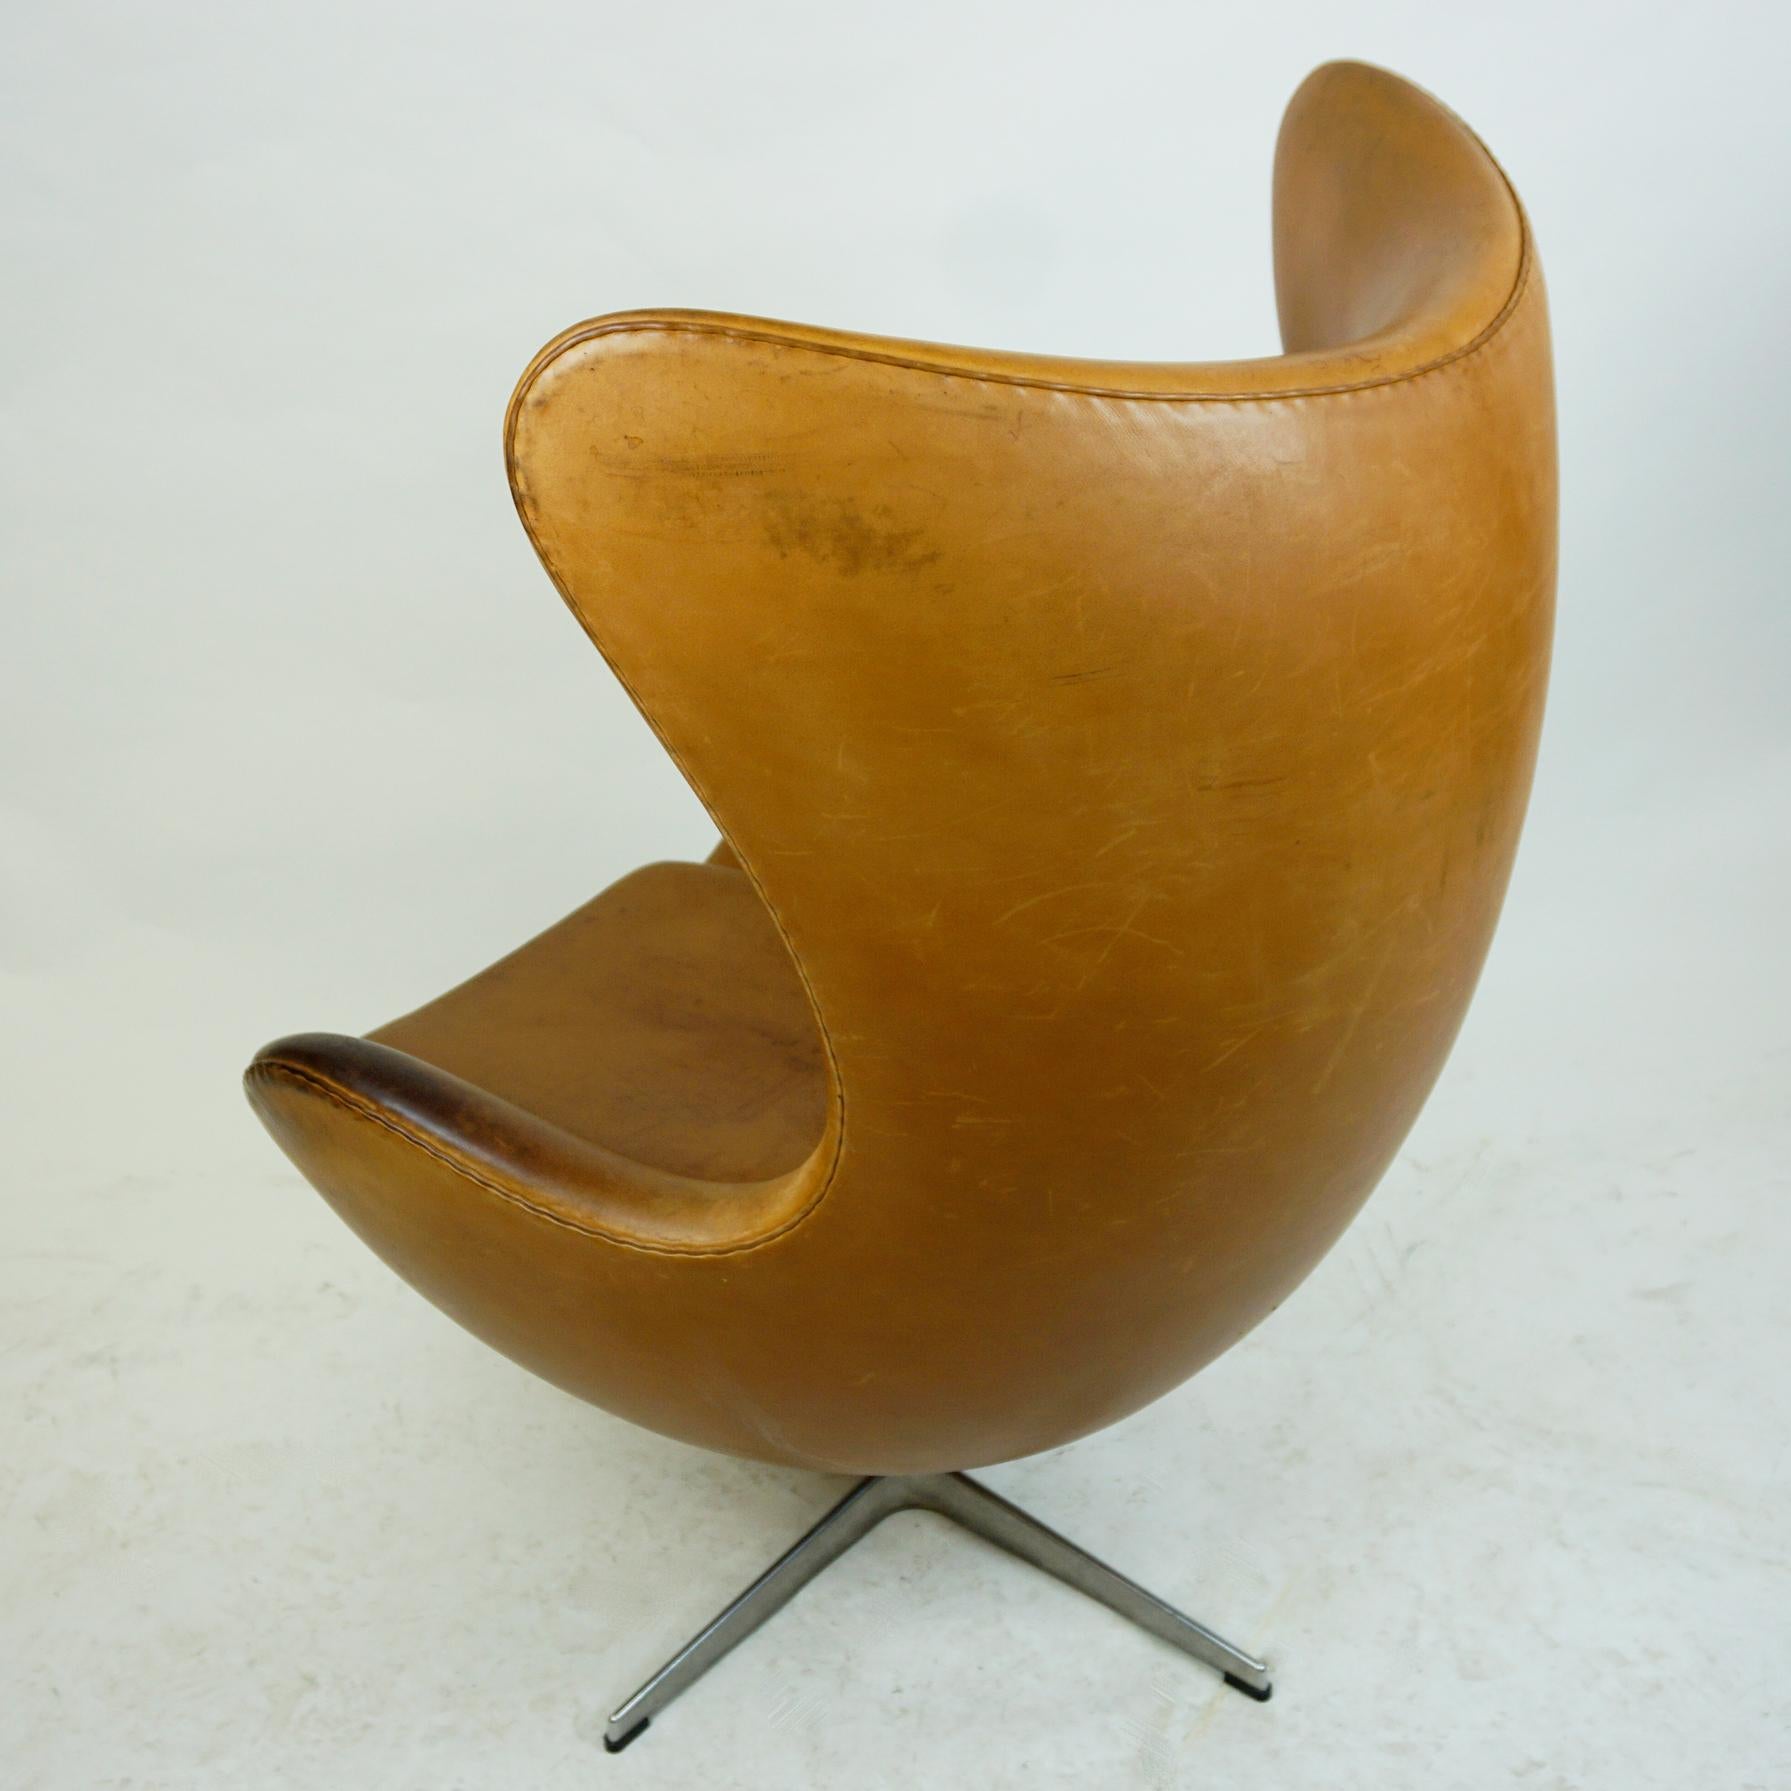 Scandinavian Modern Cognac Leather Egg Chair, Mod. 3317 by Arne Jacobsen for Fritz Hansen